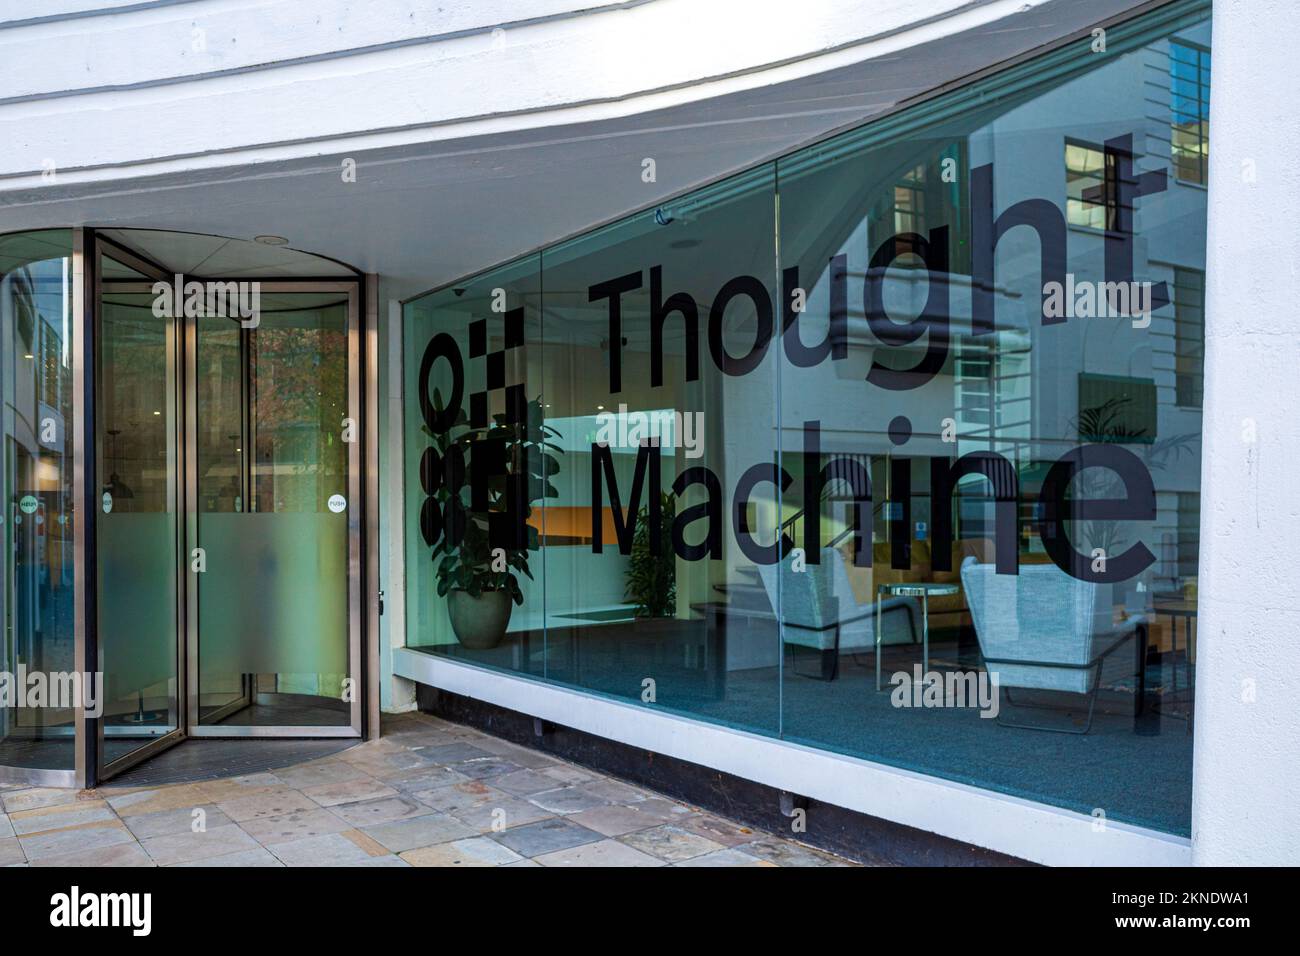 Thought Machine HQ London Herbrand St - Thought Machine ist ein Fintech-Unternehmen, das Cloud-basierte Plattformen für die Bankbranche entwickelt. Gegründet 2014. Stockfoto